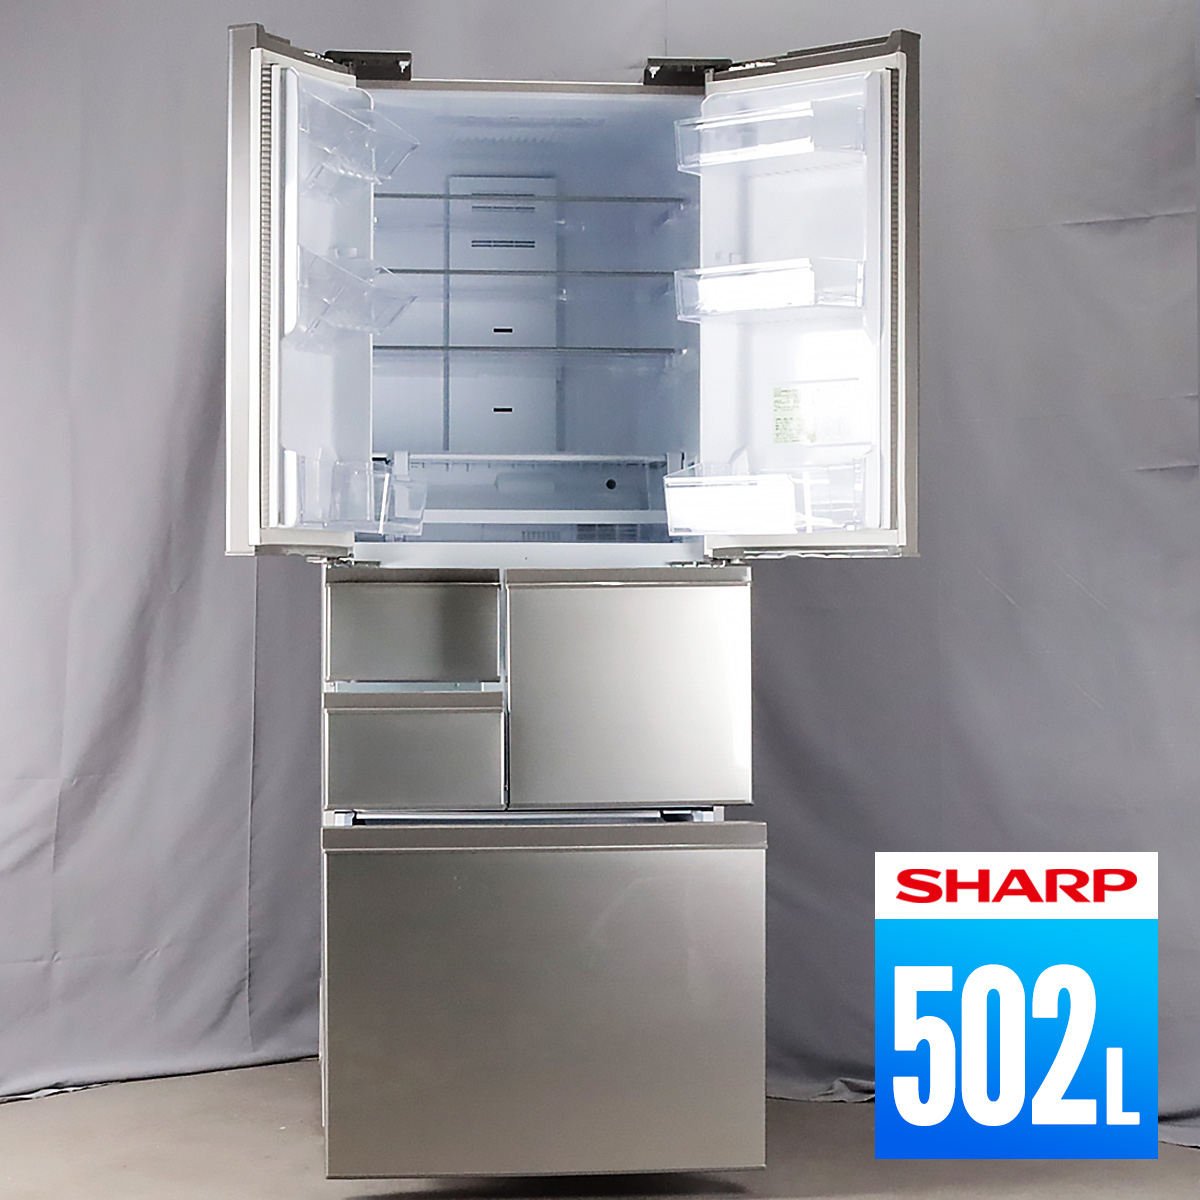 シャープノンフロン冷凍冷蔵庫 SJ-F502F-S | skisharp.com